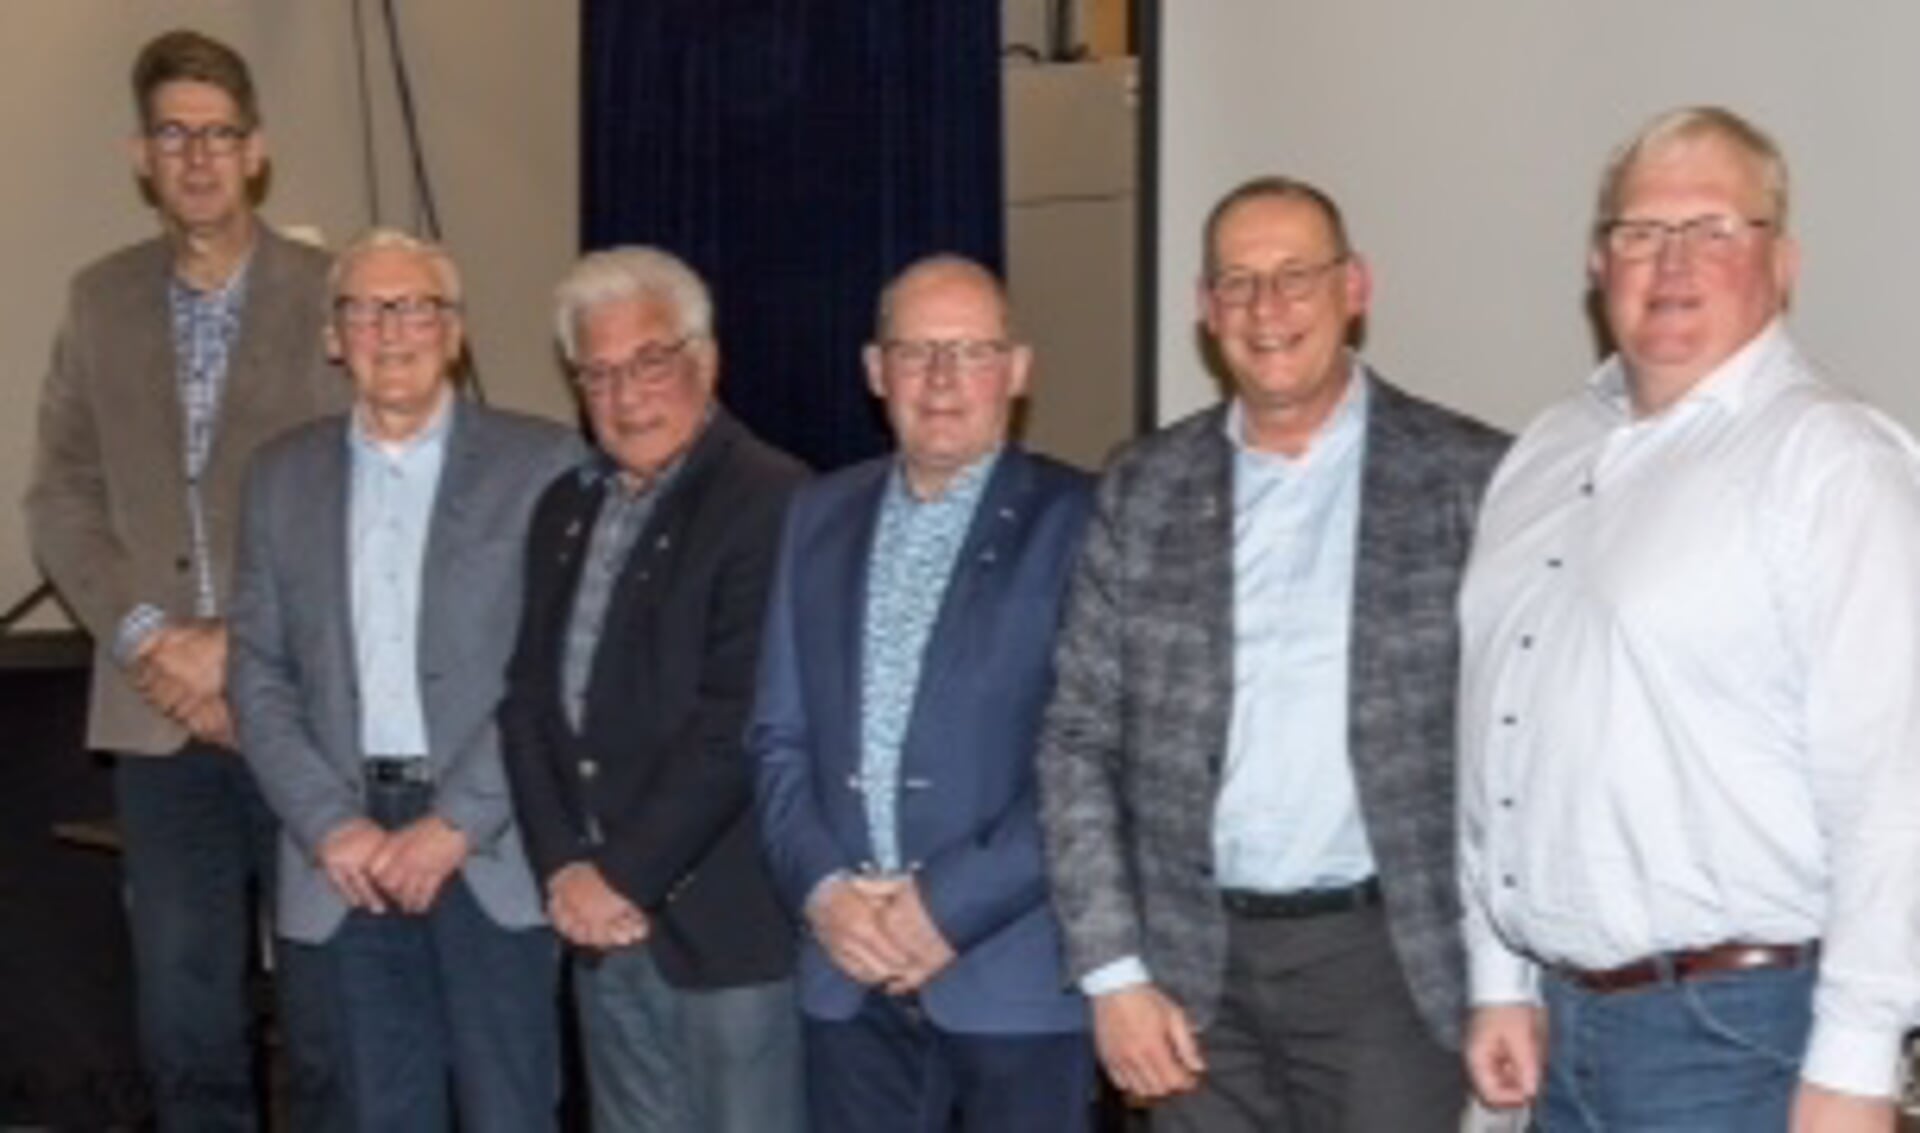 RMK: 08-03-2019: Jaarvergadering Rijssens mannenkoor 2019: Rijssen